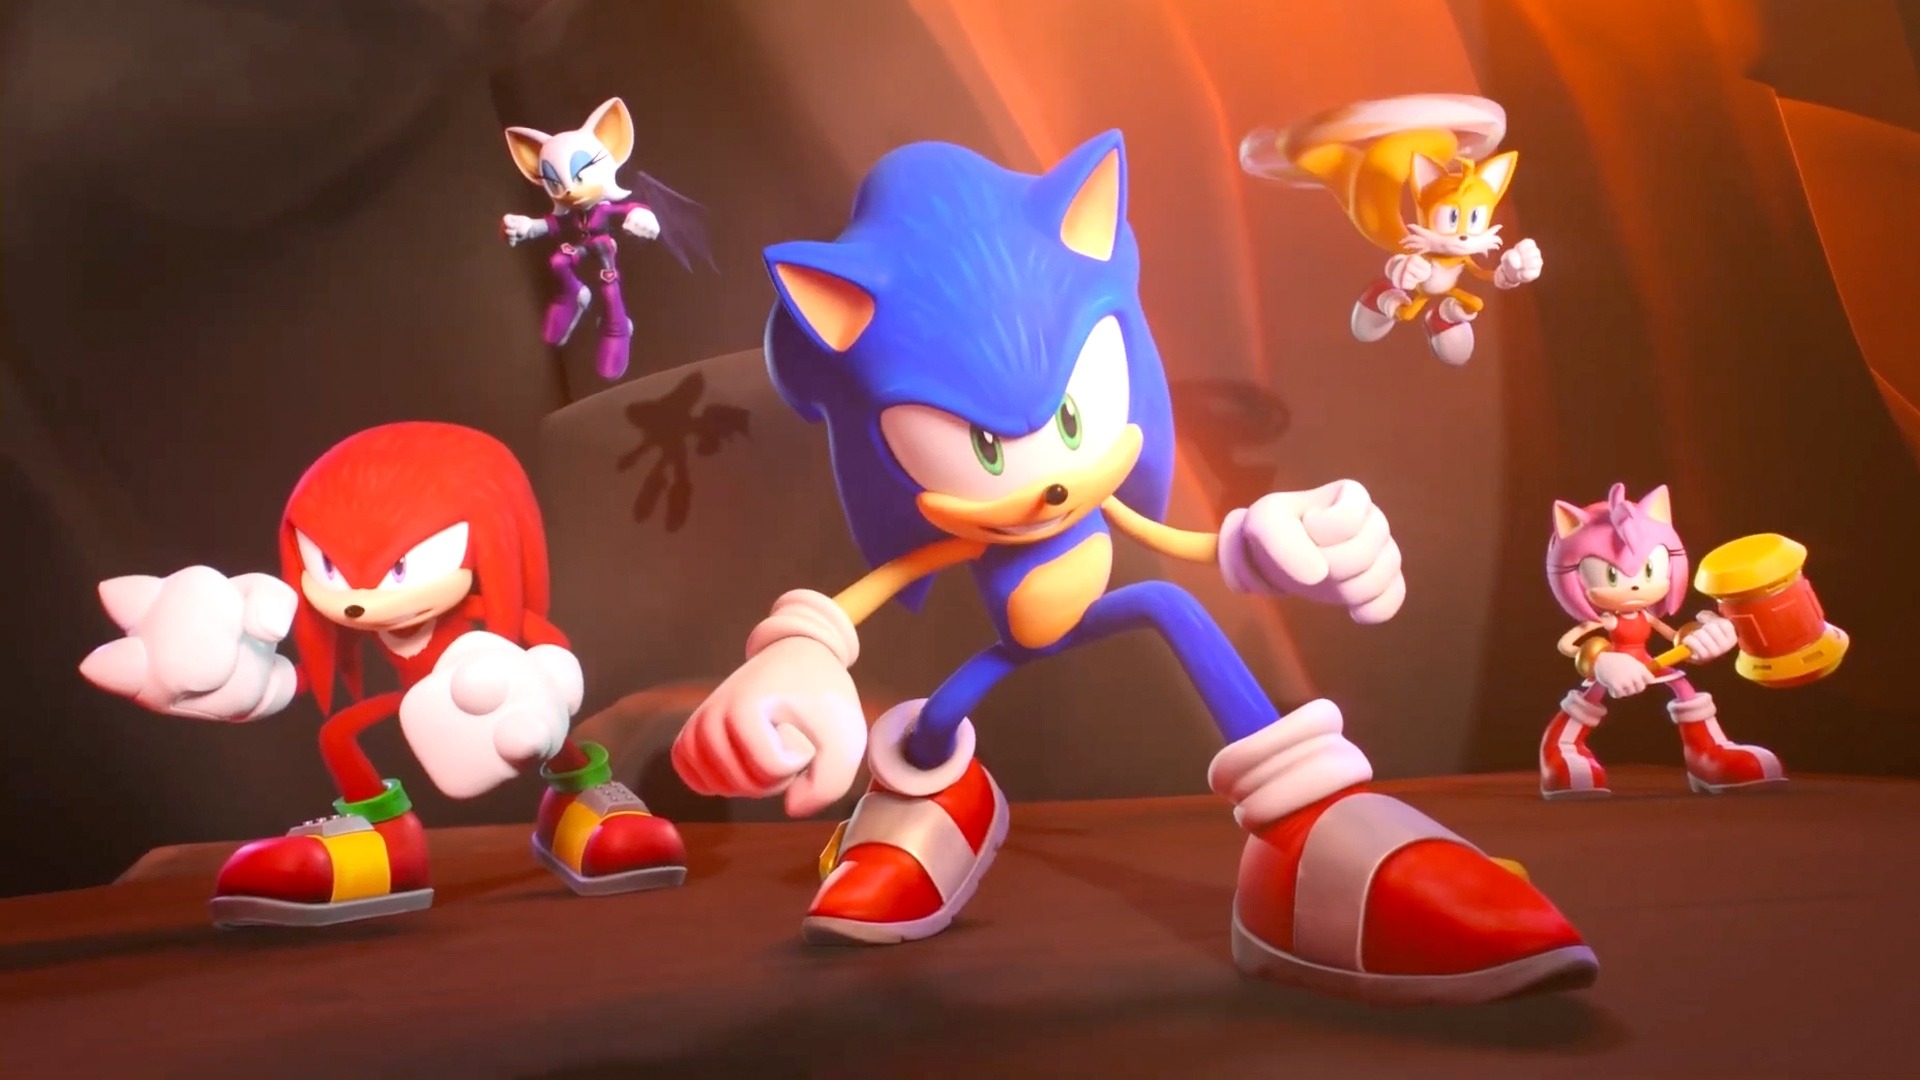 SNEAK PEEK : Sonic Prime Season 2